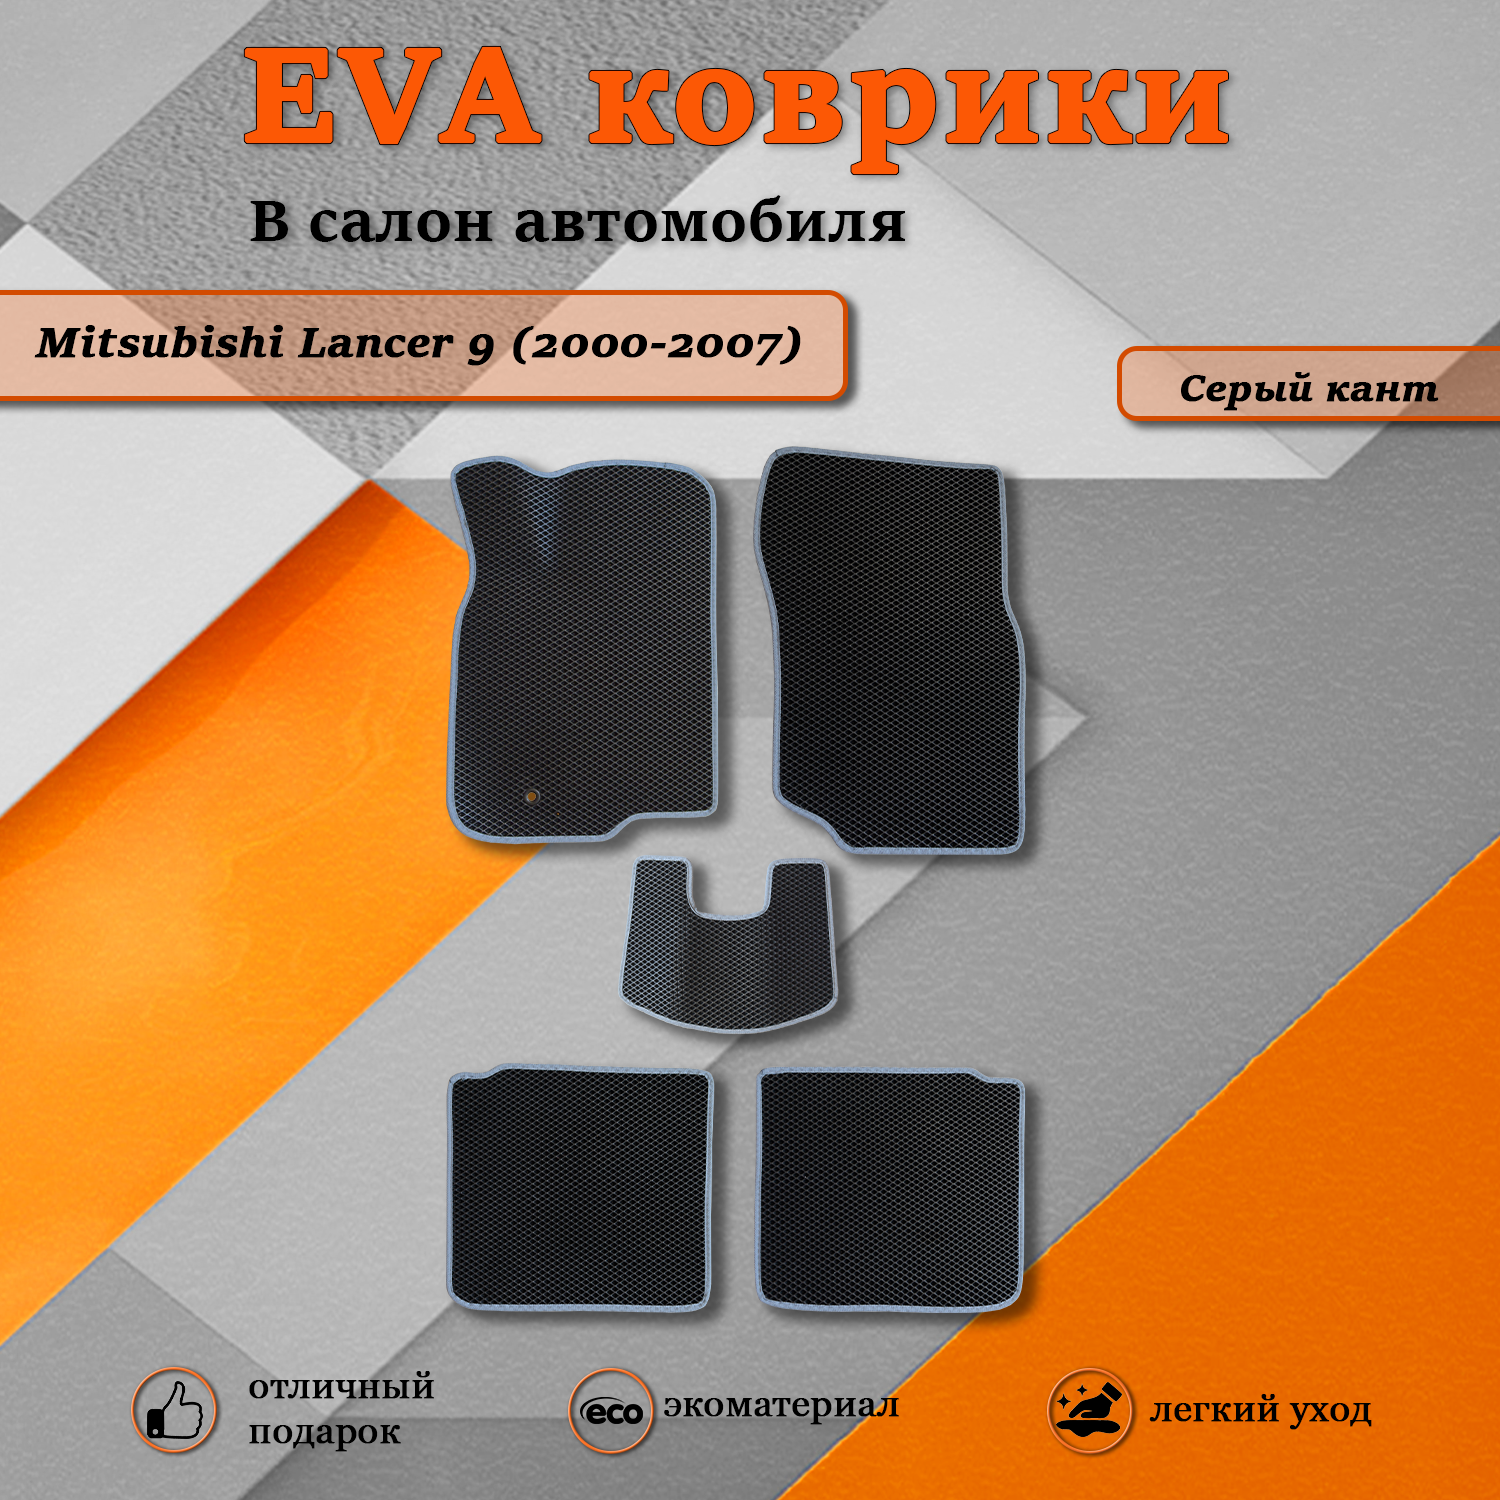 Комплект ковриков Ева(EVA) TOROS Митсубиси Лансер 9 (2000-2007) черный/серый кант